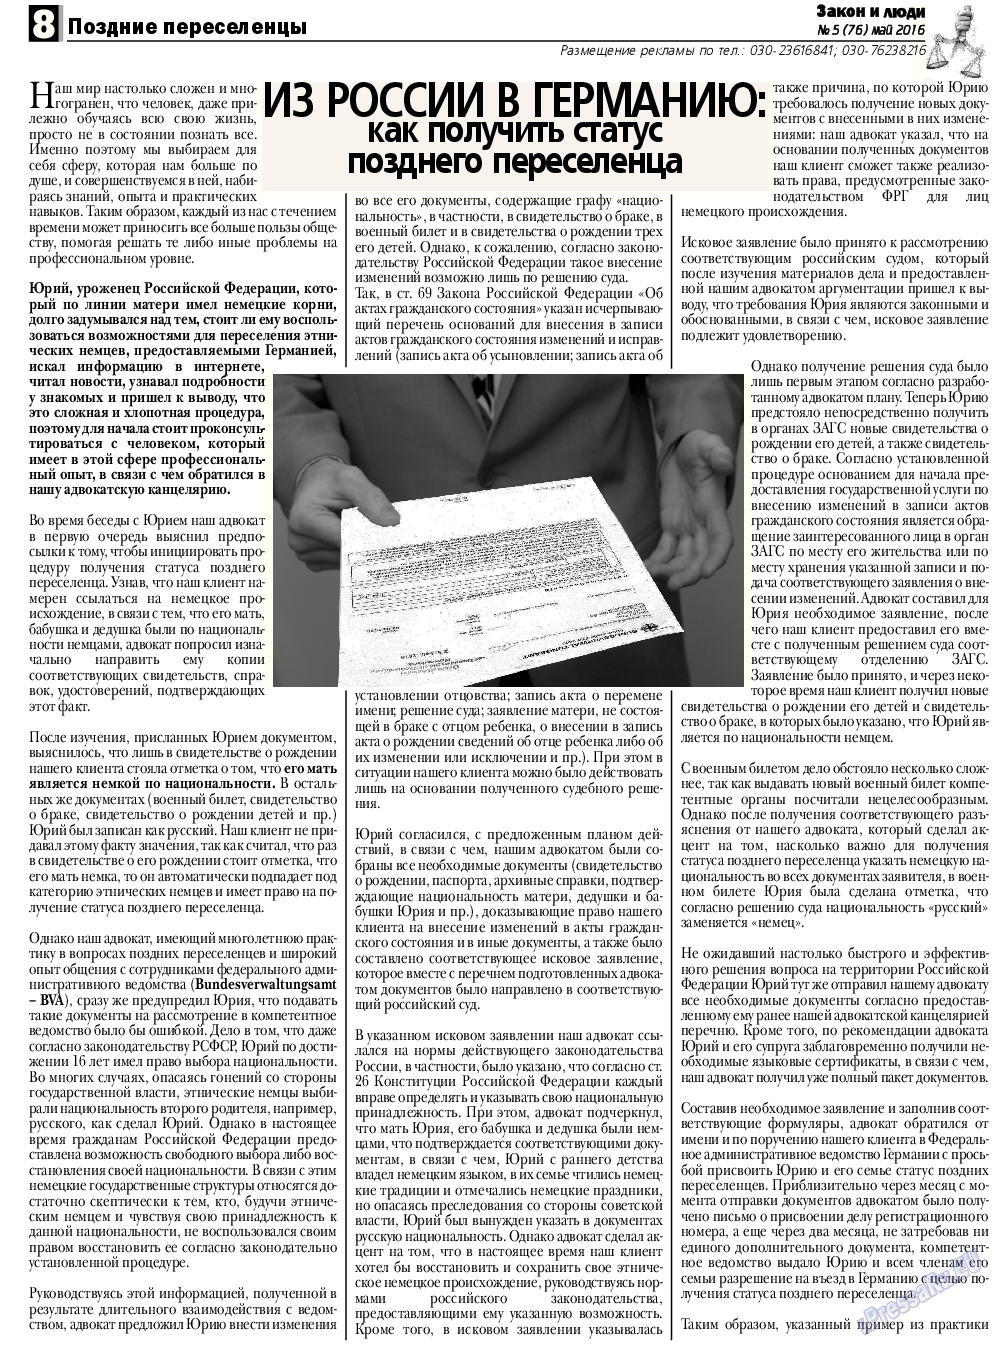 Закон и люди, газета. 2016 №5 стр.8